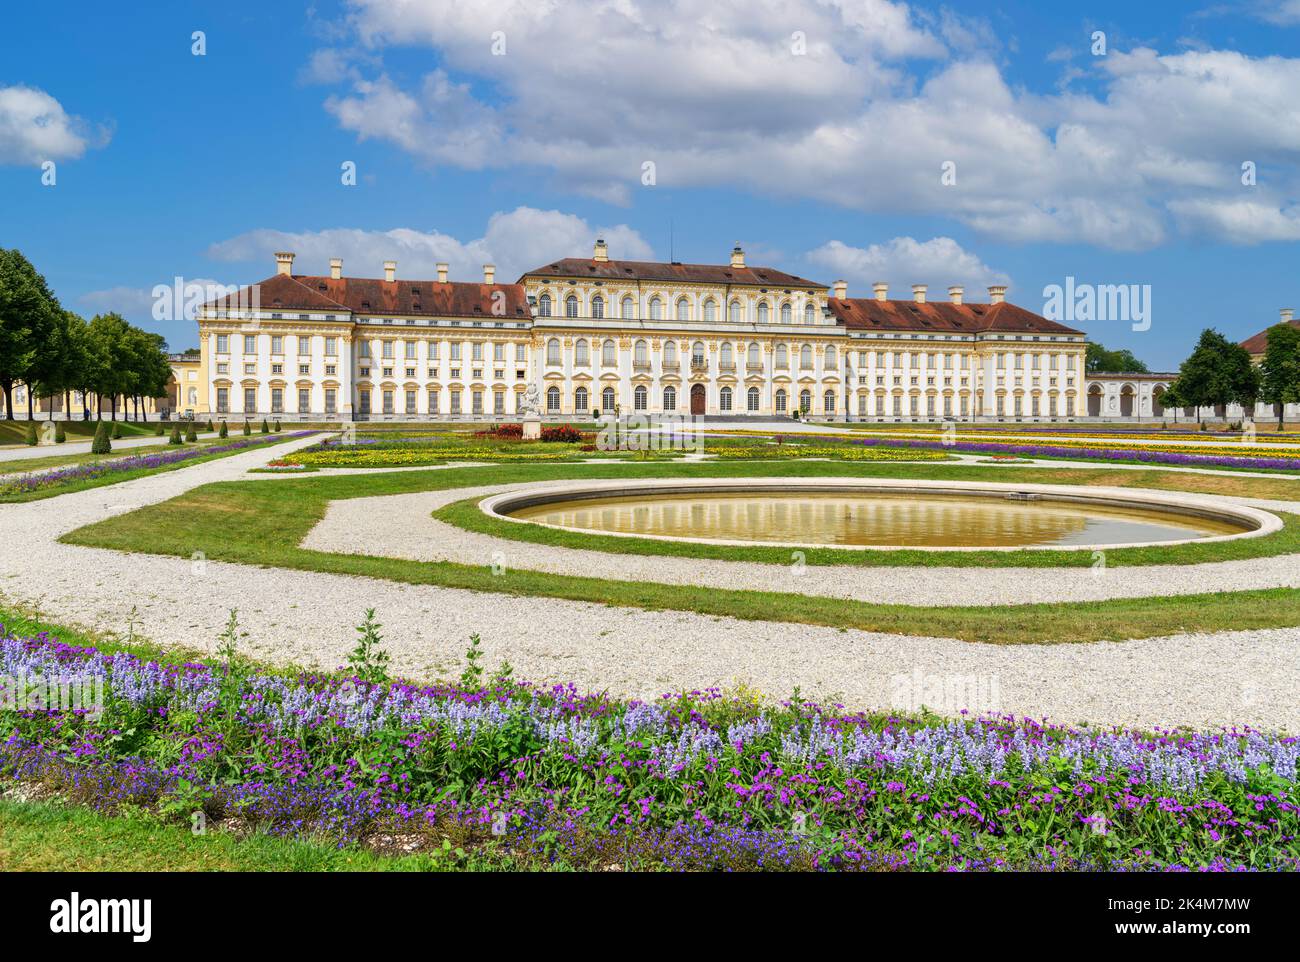 Neues Schloss Schleißheim, Schleissheim palace complex, Munich, Bavaria, Germany Stock Photo